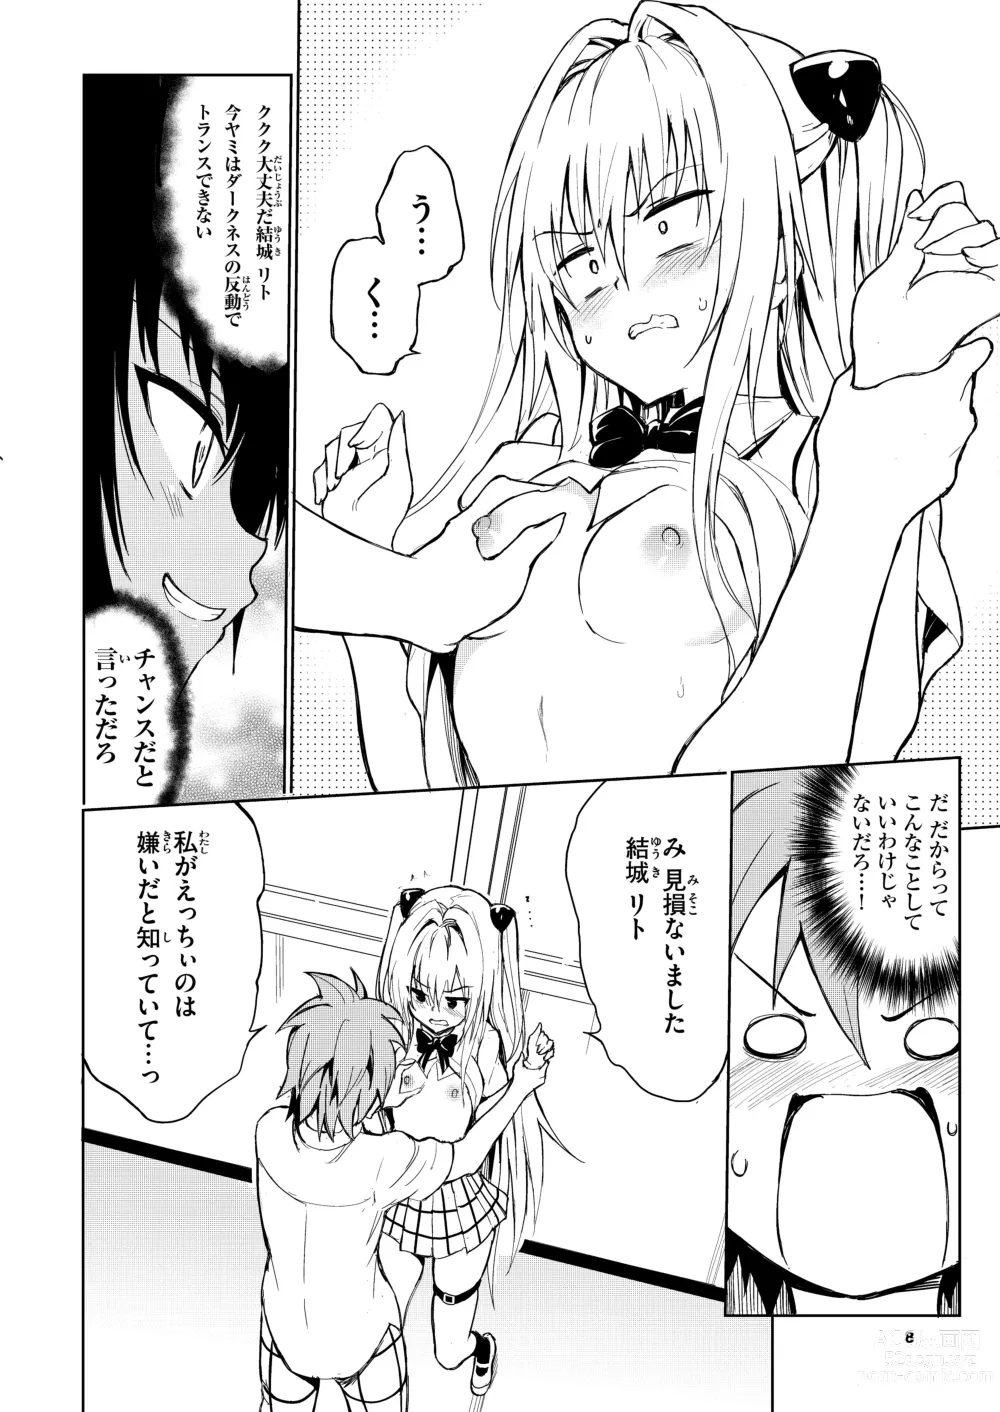 Page 8 of doujinshi Ecchii no wa Kirai desu ka?